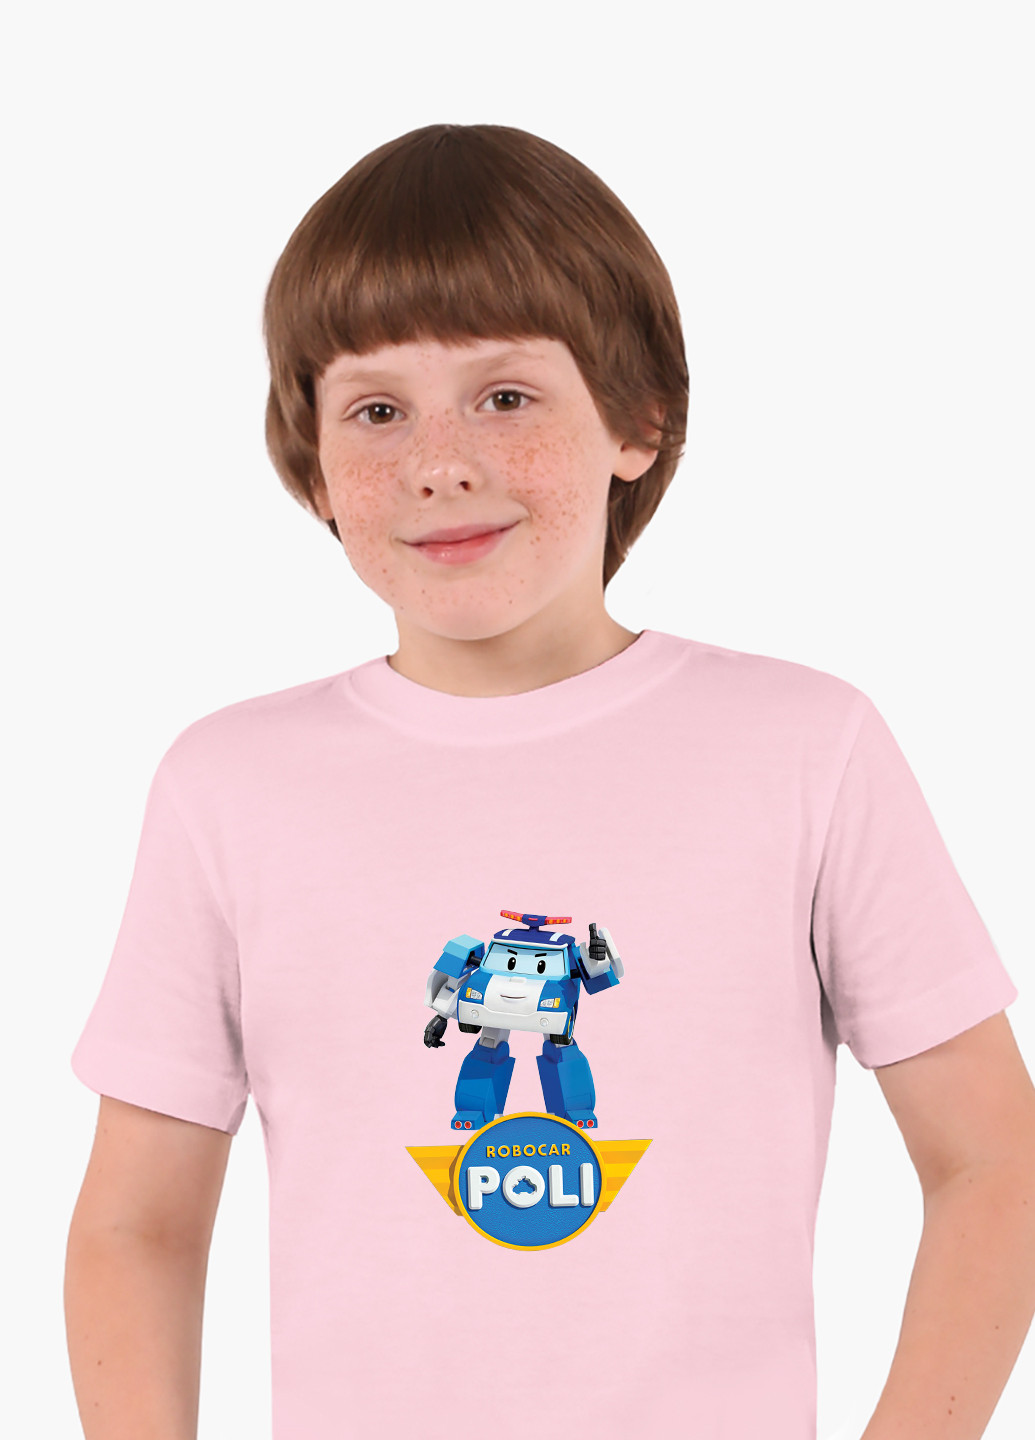 Рожева демісезонна футболка дитяча робокар полі (robocar poli) (9224-1620) MobiPrint